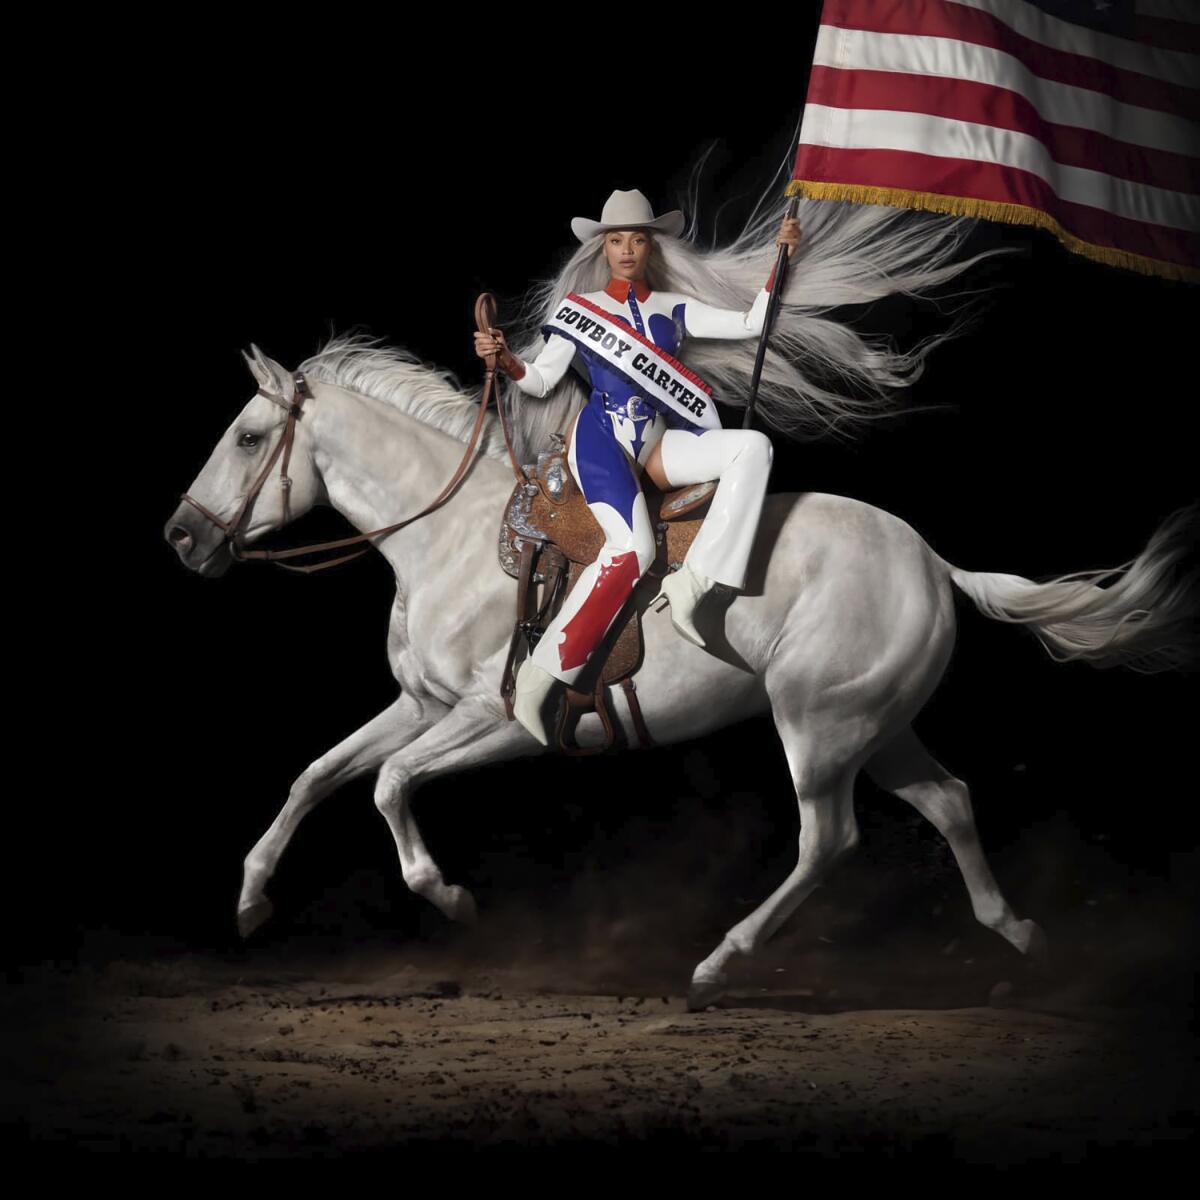 "Cowboy Carter" Albumcover von Beyoncé in einem rot-weiß-blauen Rodeo-Outfit, auf einem Pferd reitend und eine amerikanische Flagge haltend.